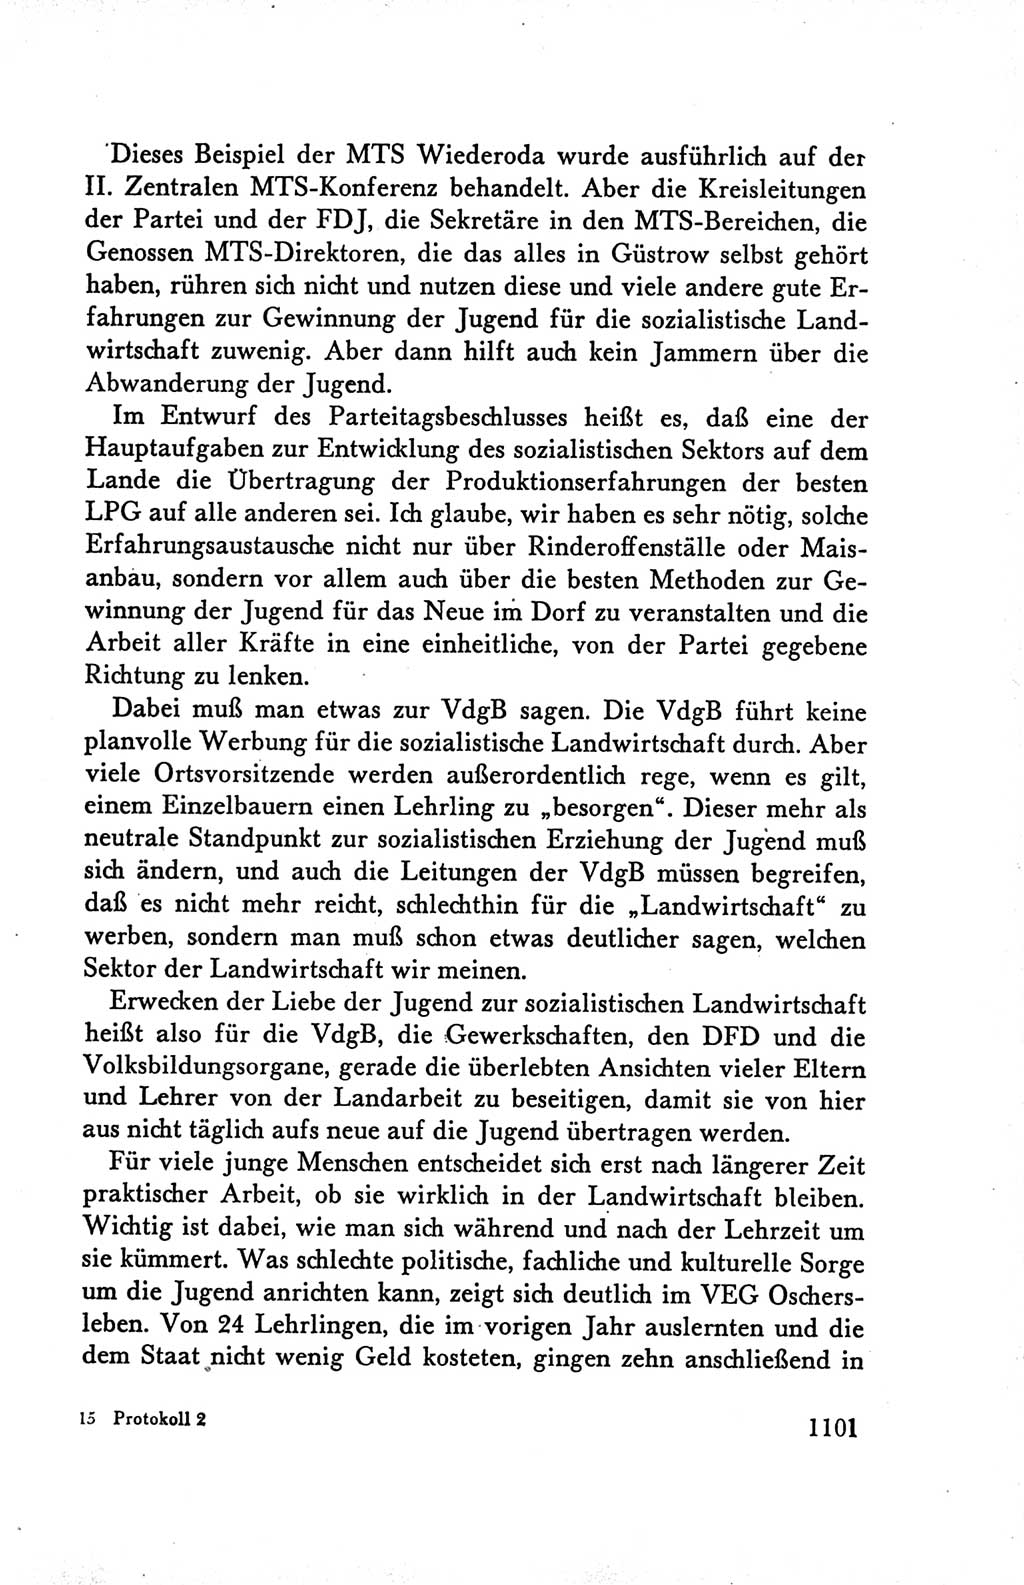 Protokoll der Verhandlungen des Ⅴ. Parteitages der Sozialistischen Einheitspartei Deutschlands (SED) [Deutsche Demokratische Republik (DDR)] 1958, Seite 1101